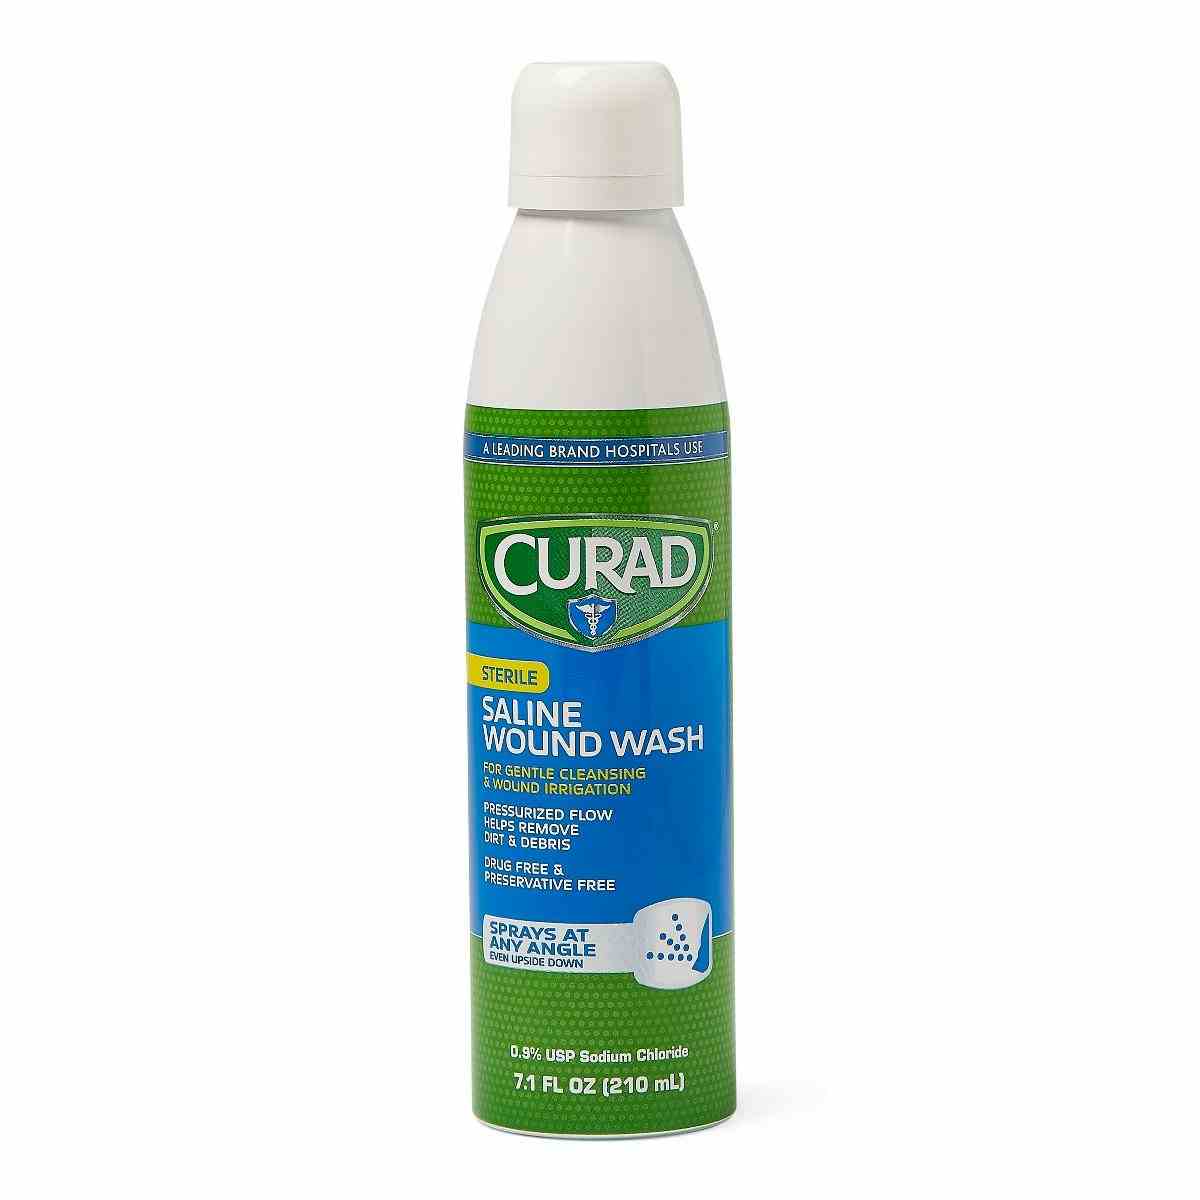 Curad Saline Wound Wash, Spray, 7.1 oz. , CURSALINE7, Case of 12